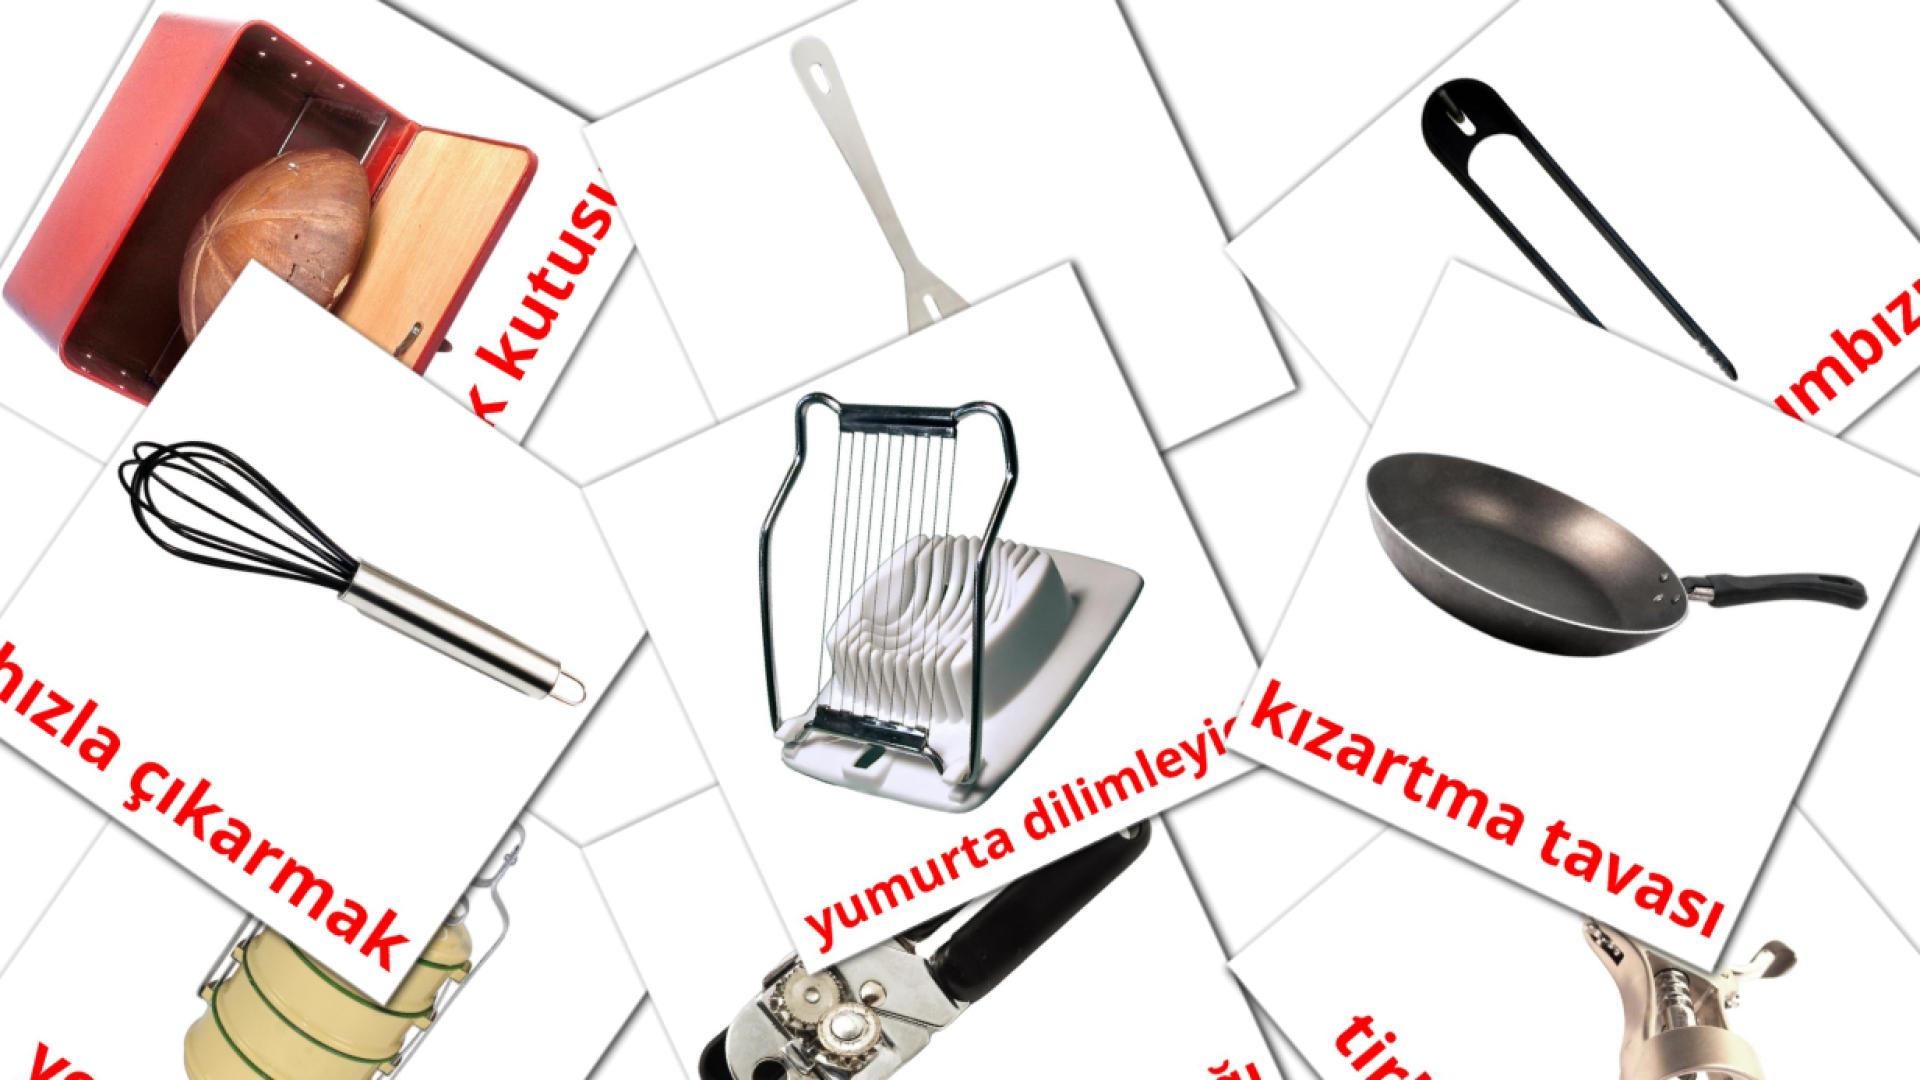 31 Bildkarten für Kitchenware mutfak eşyaları